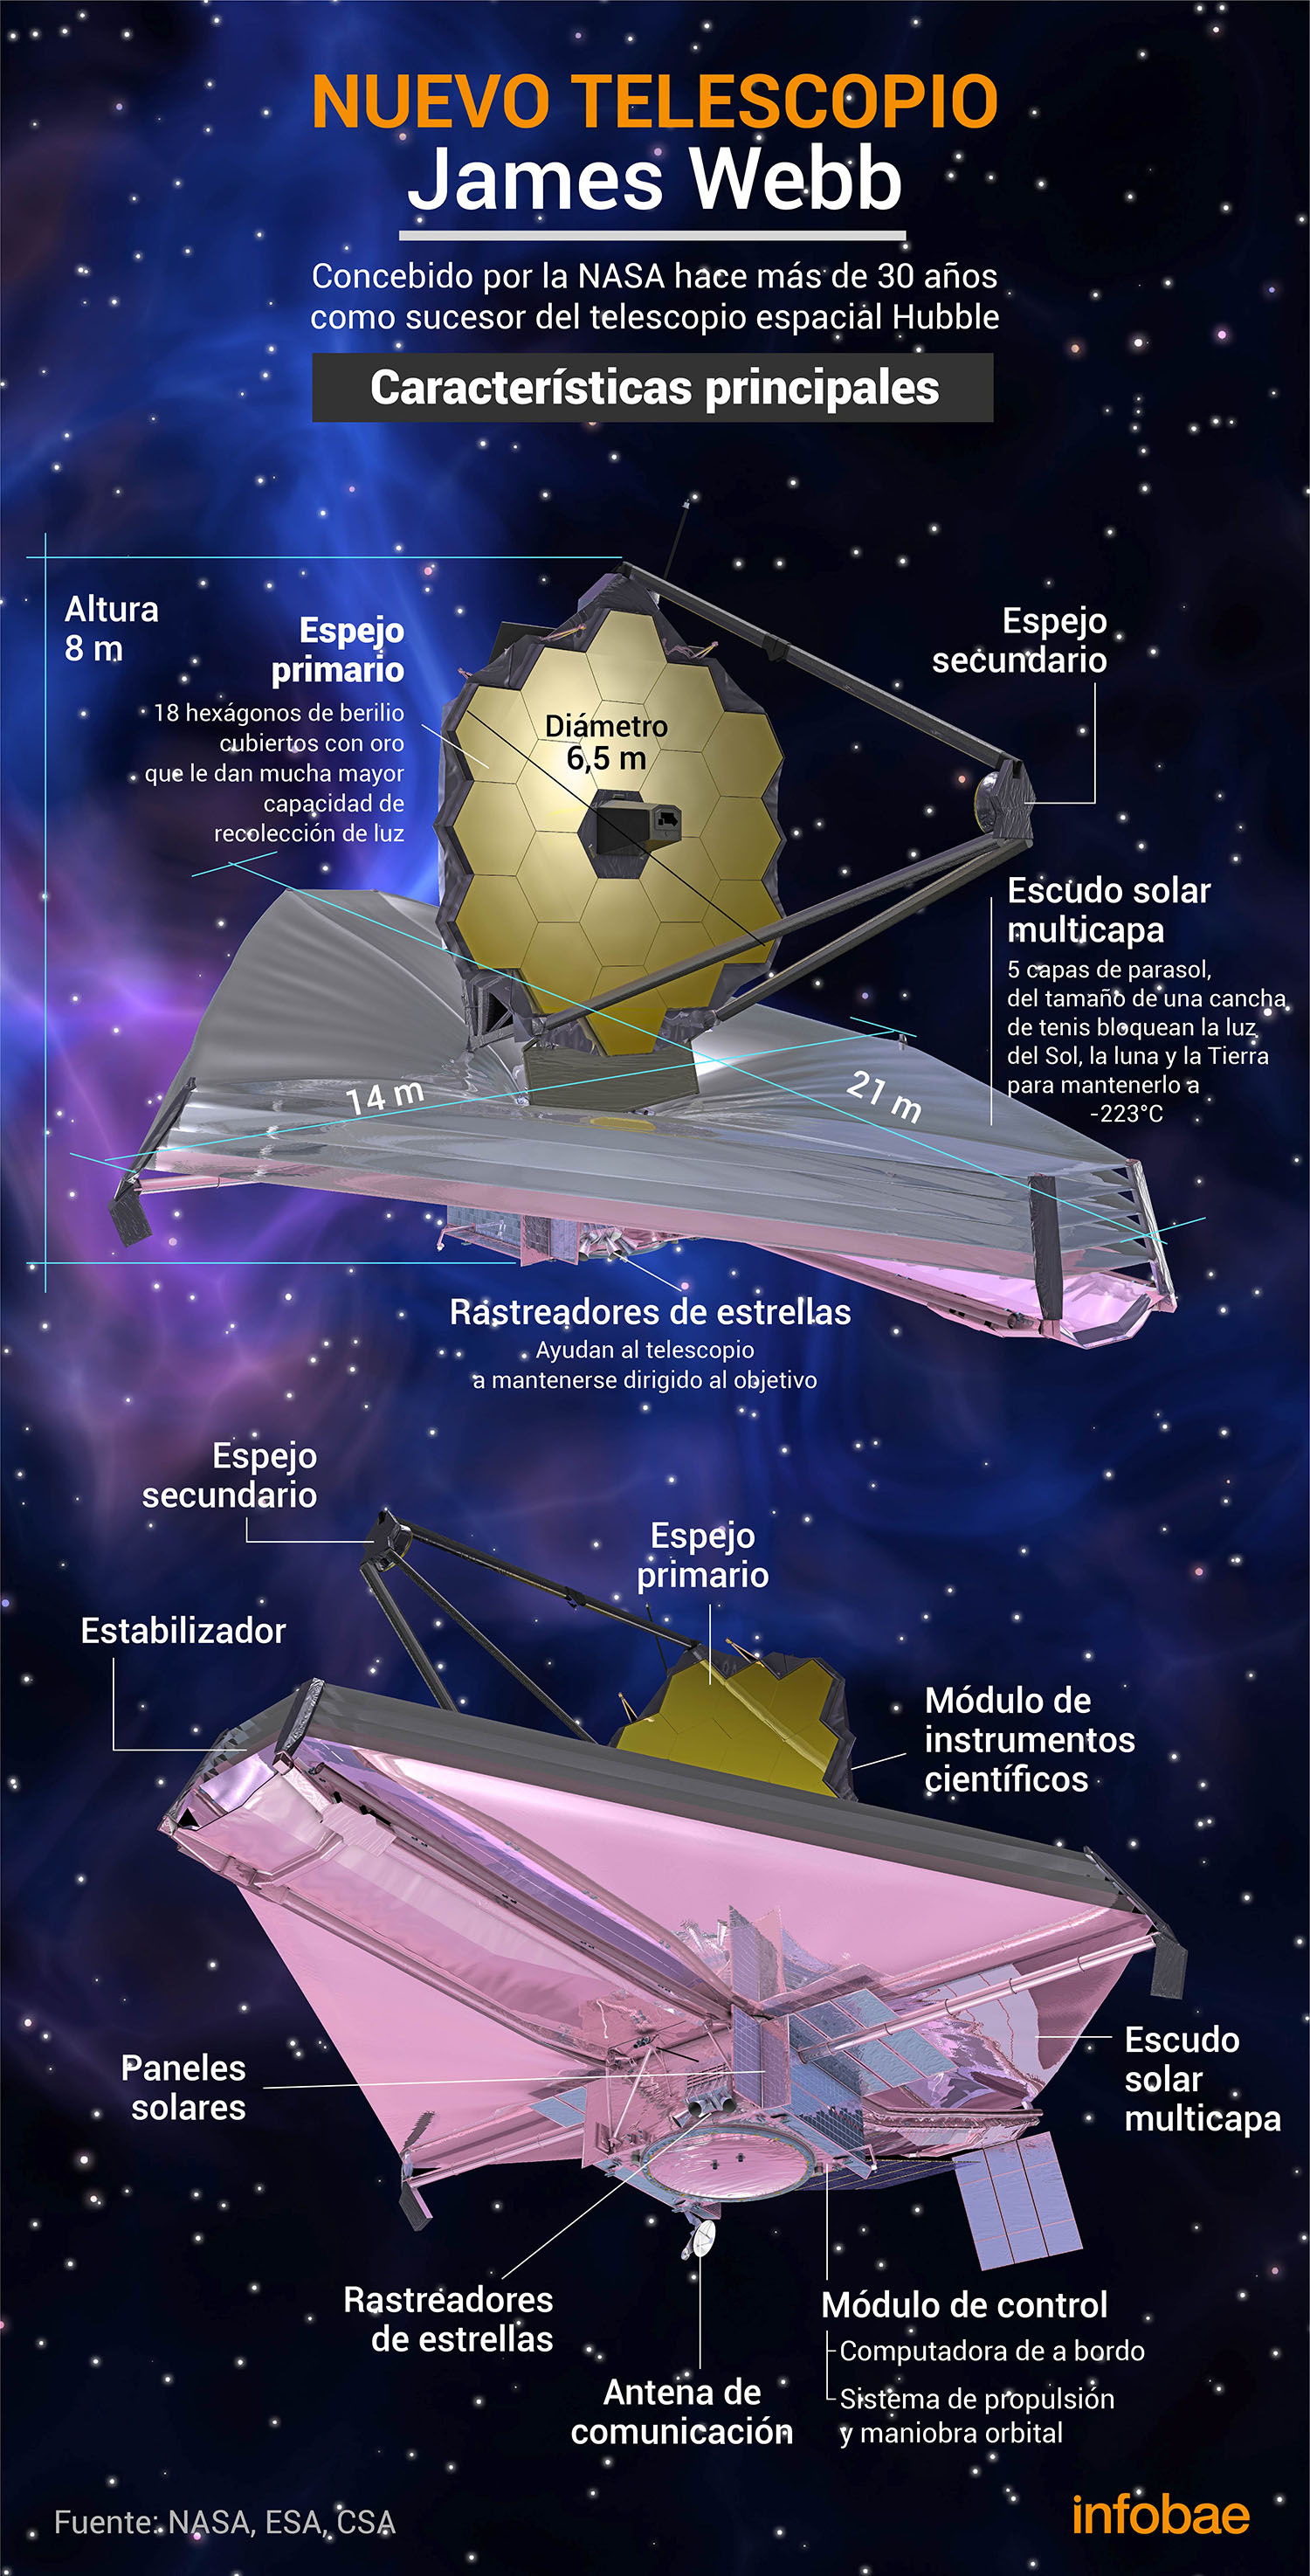 Il James Webb Telescope ha rivoluzionato il campo dell'astronomia grazie ai risultati senza precedenti che consente